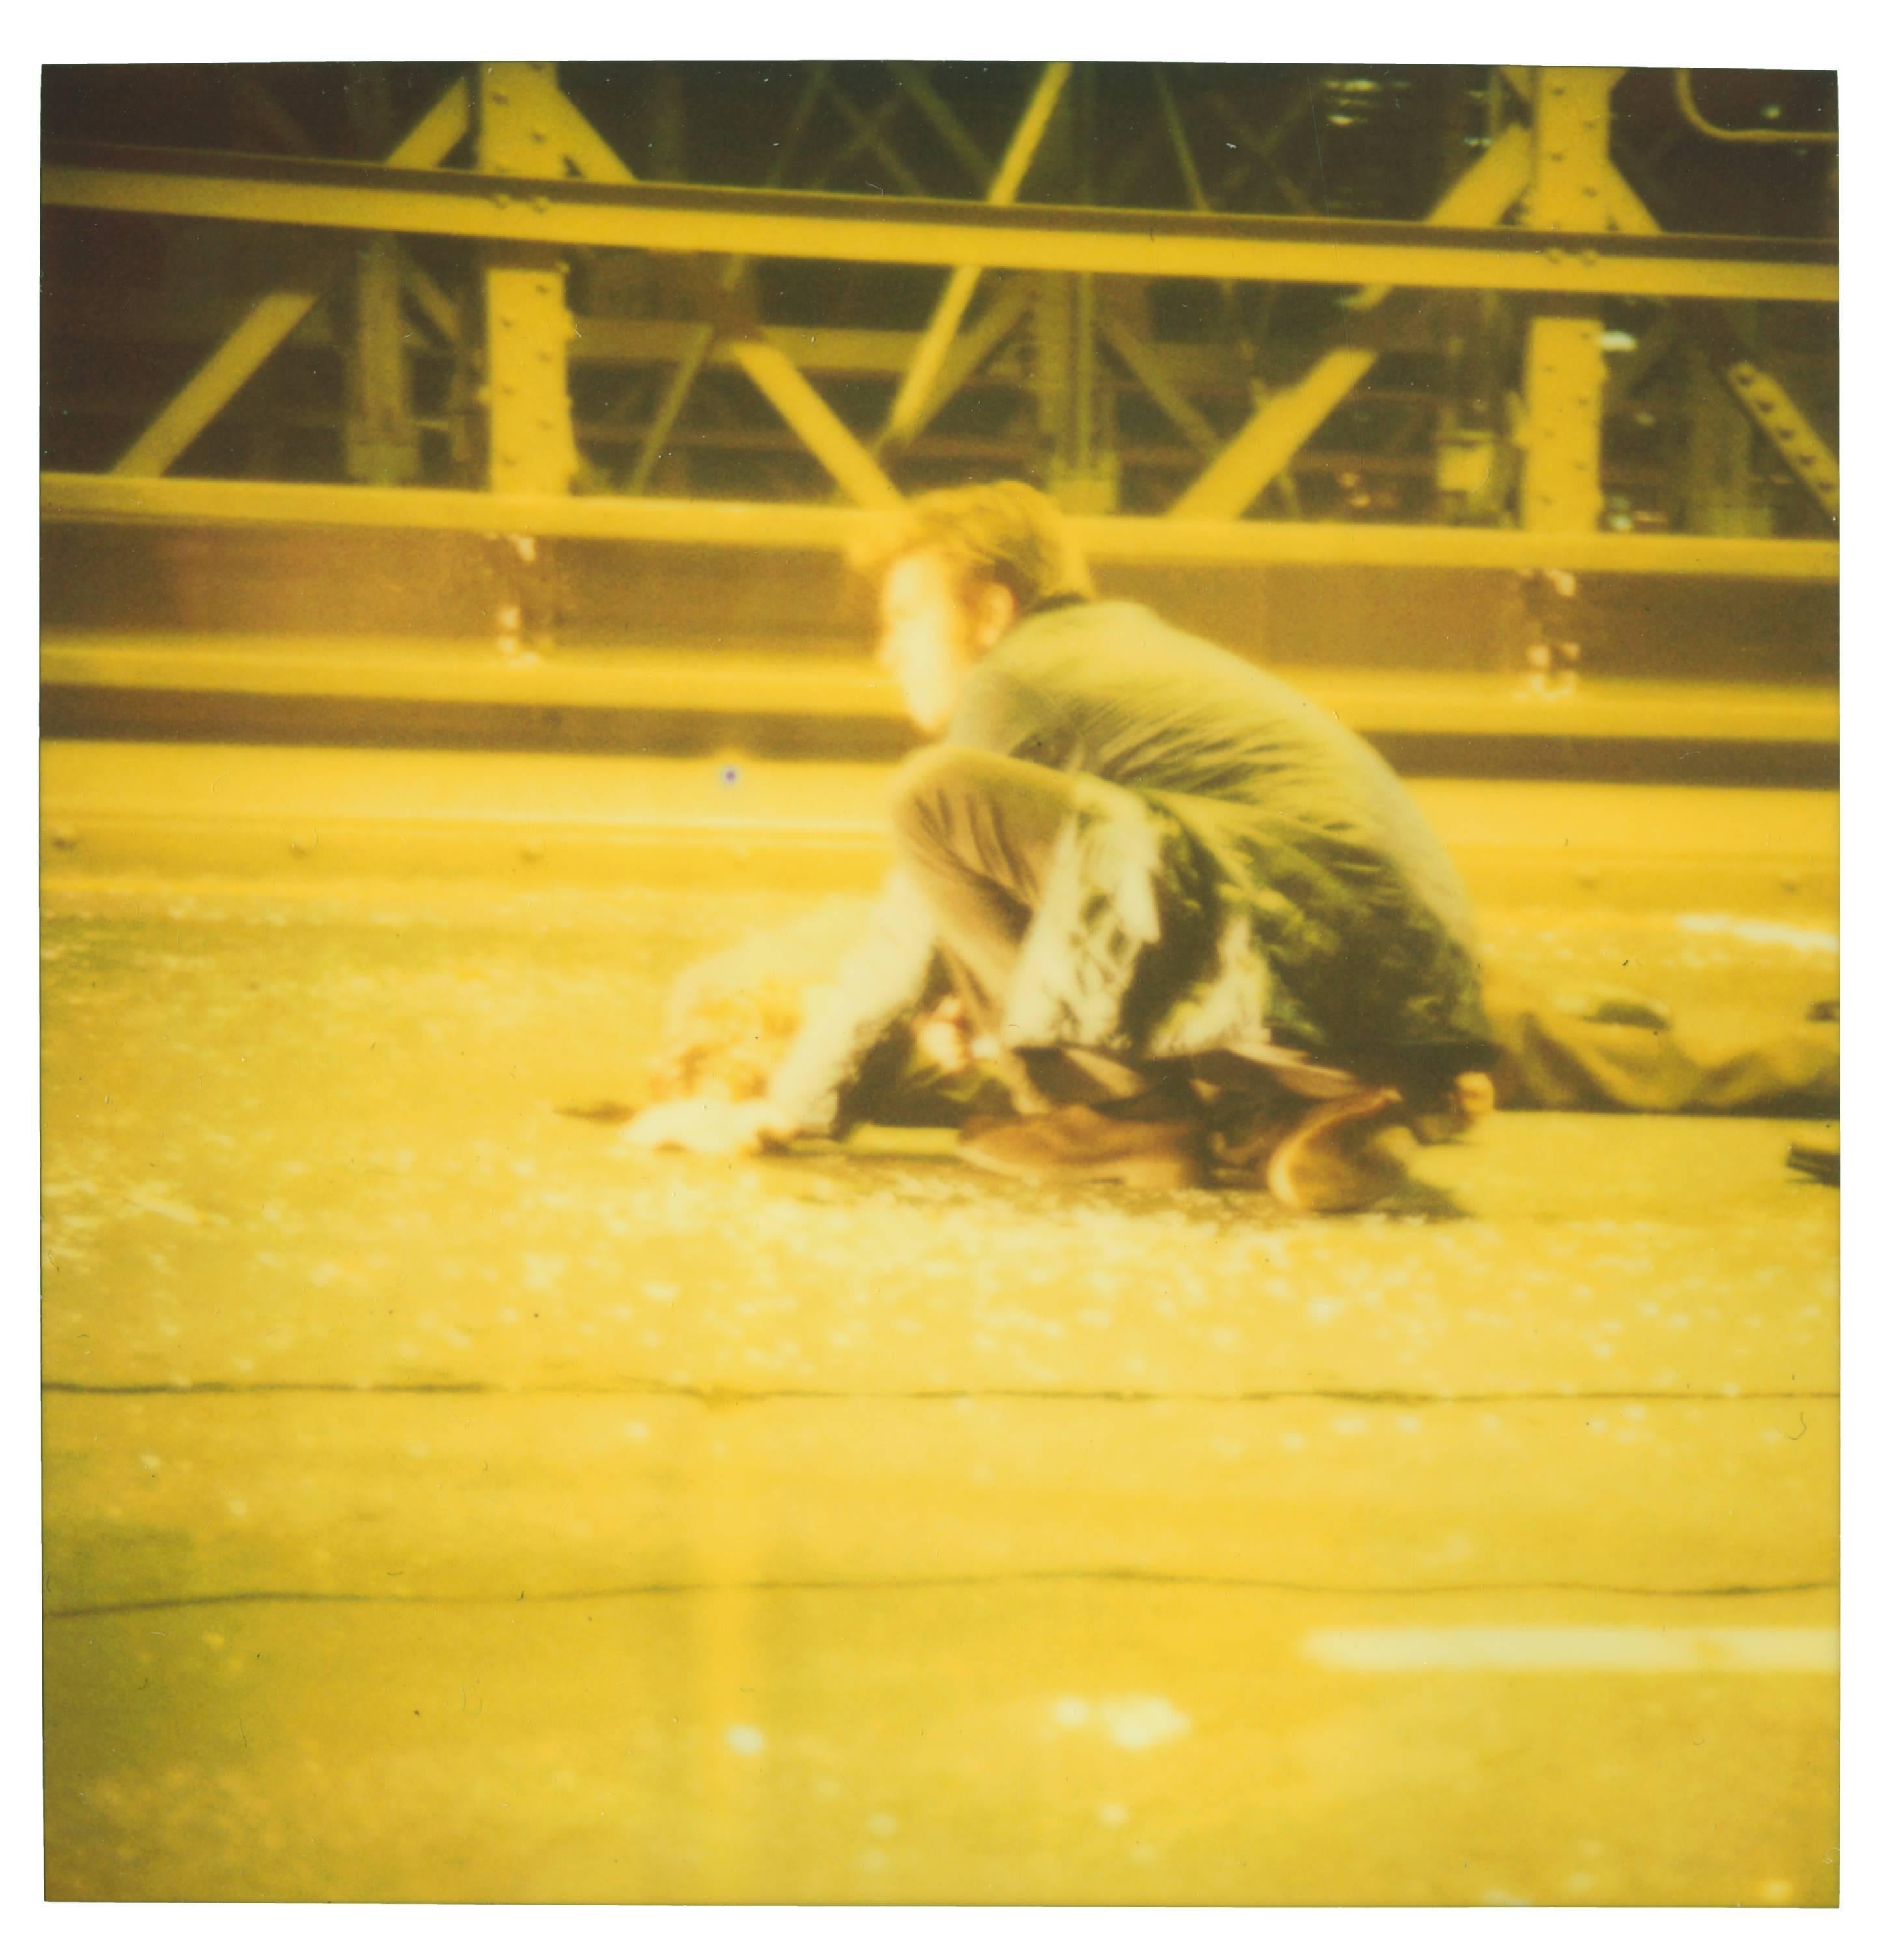 accident II - mit Ewan McGregor und Ryan Gosling, Polaroid, 21. Jahrhundert, Farbe